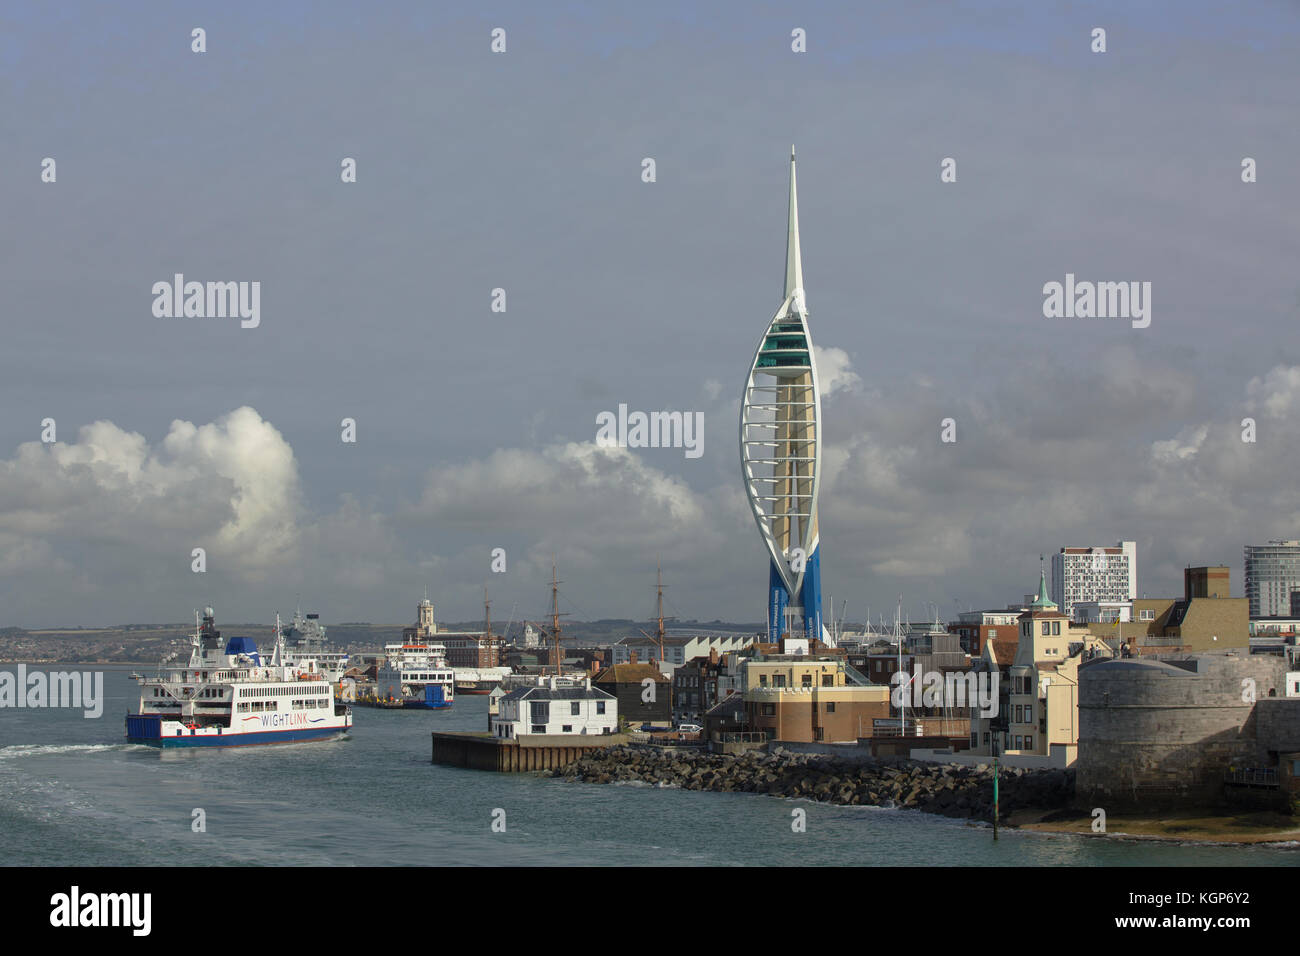 Millennium Turm hinter dem historischen Viertel von Portsmouth. Blick zurück in den Hafen an einem klaren Tag. Wightlink Fähre und andere Schiffe. Stockfoto